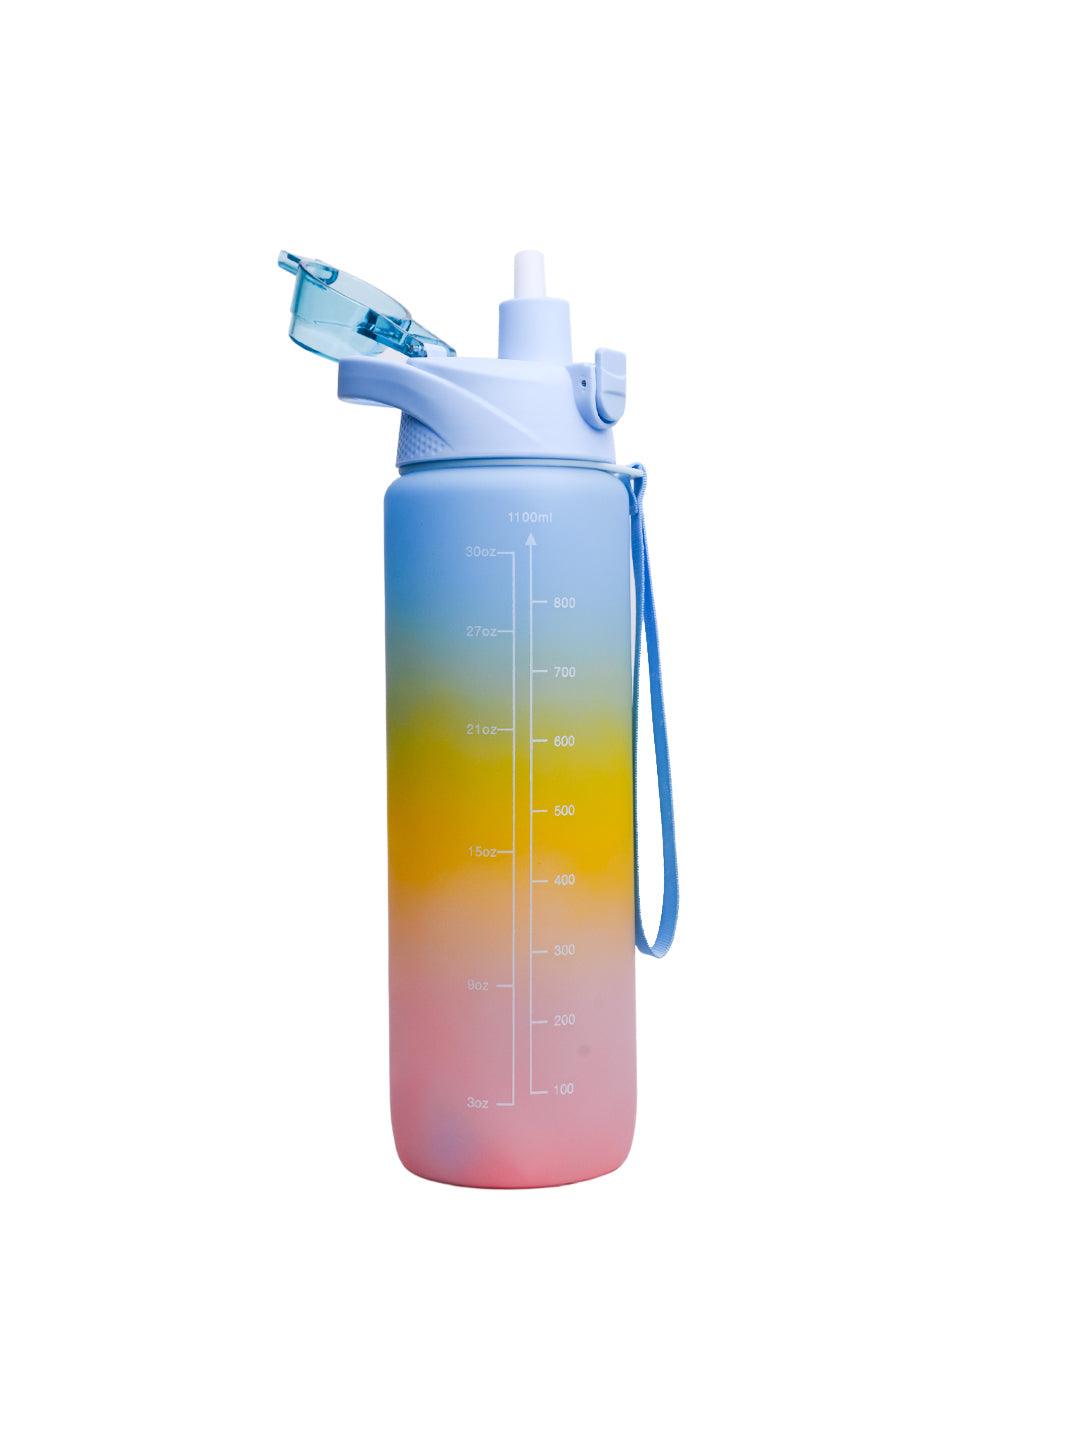 Motivational Sipper Travel Water Bottle, Blue-Yellow-Pink, 1 Liter - MARKET 99